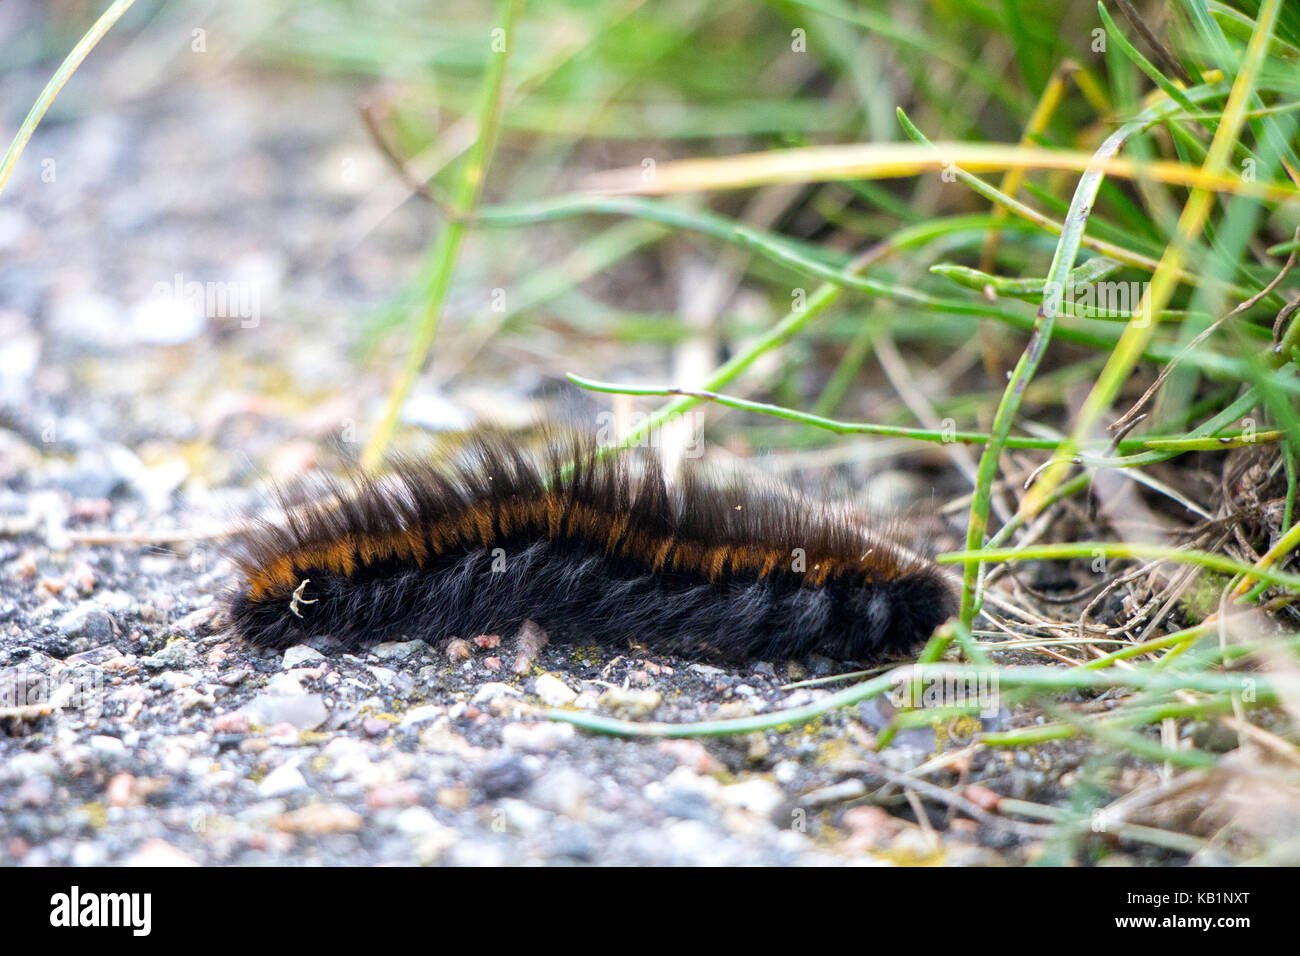 Orange Caterpillar With Black Hair Spefashion